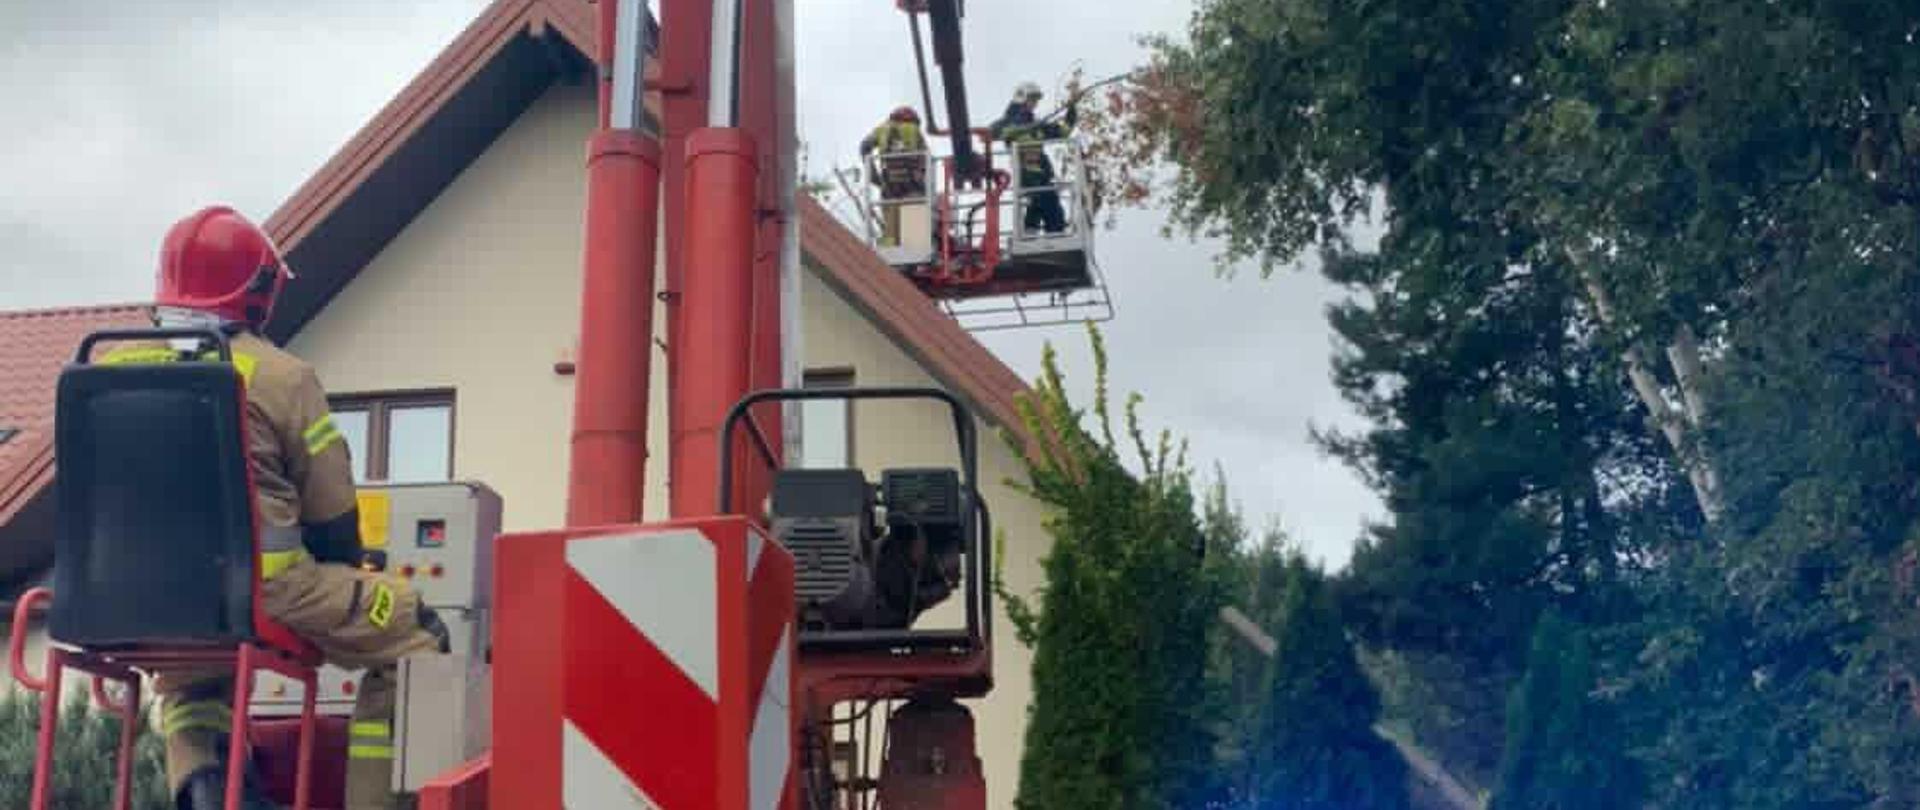 Zdjęcie przedstawia akcję ratowniczą, podczas której usuwano drzewo z dachu budynku mieszkalnego. Na pierwszym planie widać rozstawiony na drodze podnośnik hydraulczny koloru czerwonego, na siedzisku po lewej stronie siedzi operator, który obsługuje pojazd. Widoczne jest niebieskie światło ostrzegawcze. Strażak ma na sobie ubranie specjalne koloru piaskowego oraz czerwony hełm. W oddali nad dachem budynku, w koszu podnośnika znajduje się rota strażaków, którzy tną drzewo znajdujące się na dachu. Po prawej stronie rosną drzewa.